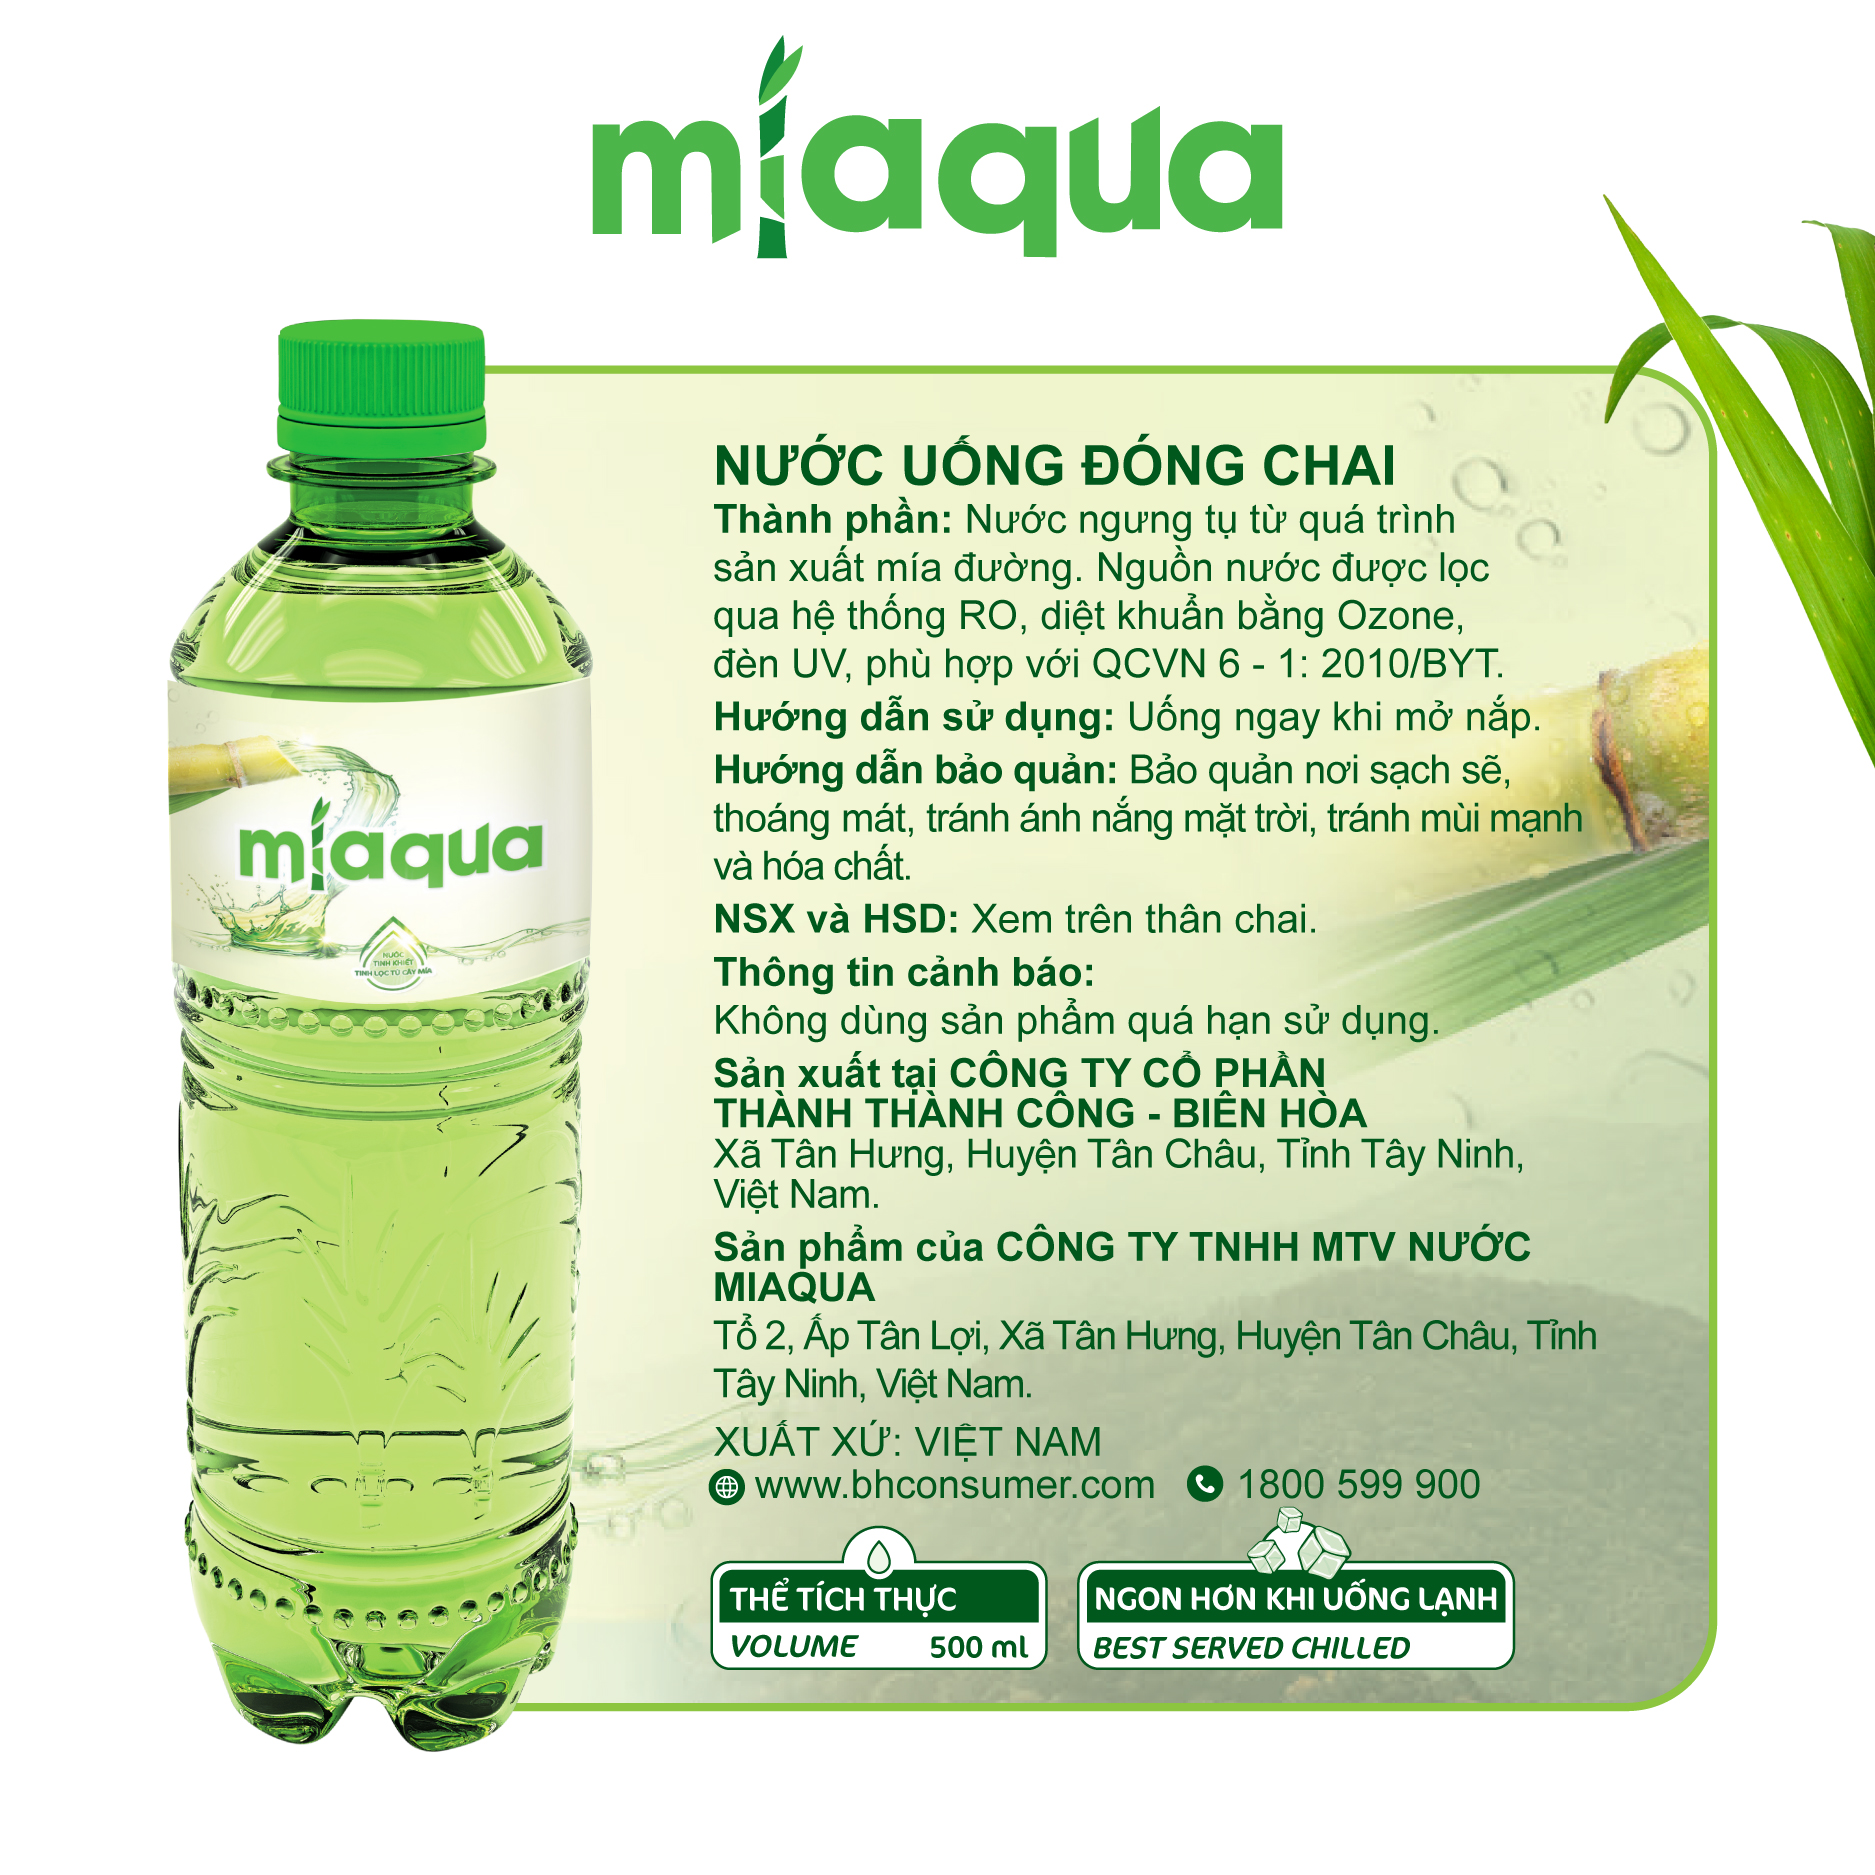 thùng 24 chai nước miaqua-nước tinh khiết tinh lọc từ cây mía 500ml chai 3